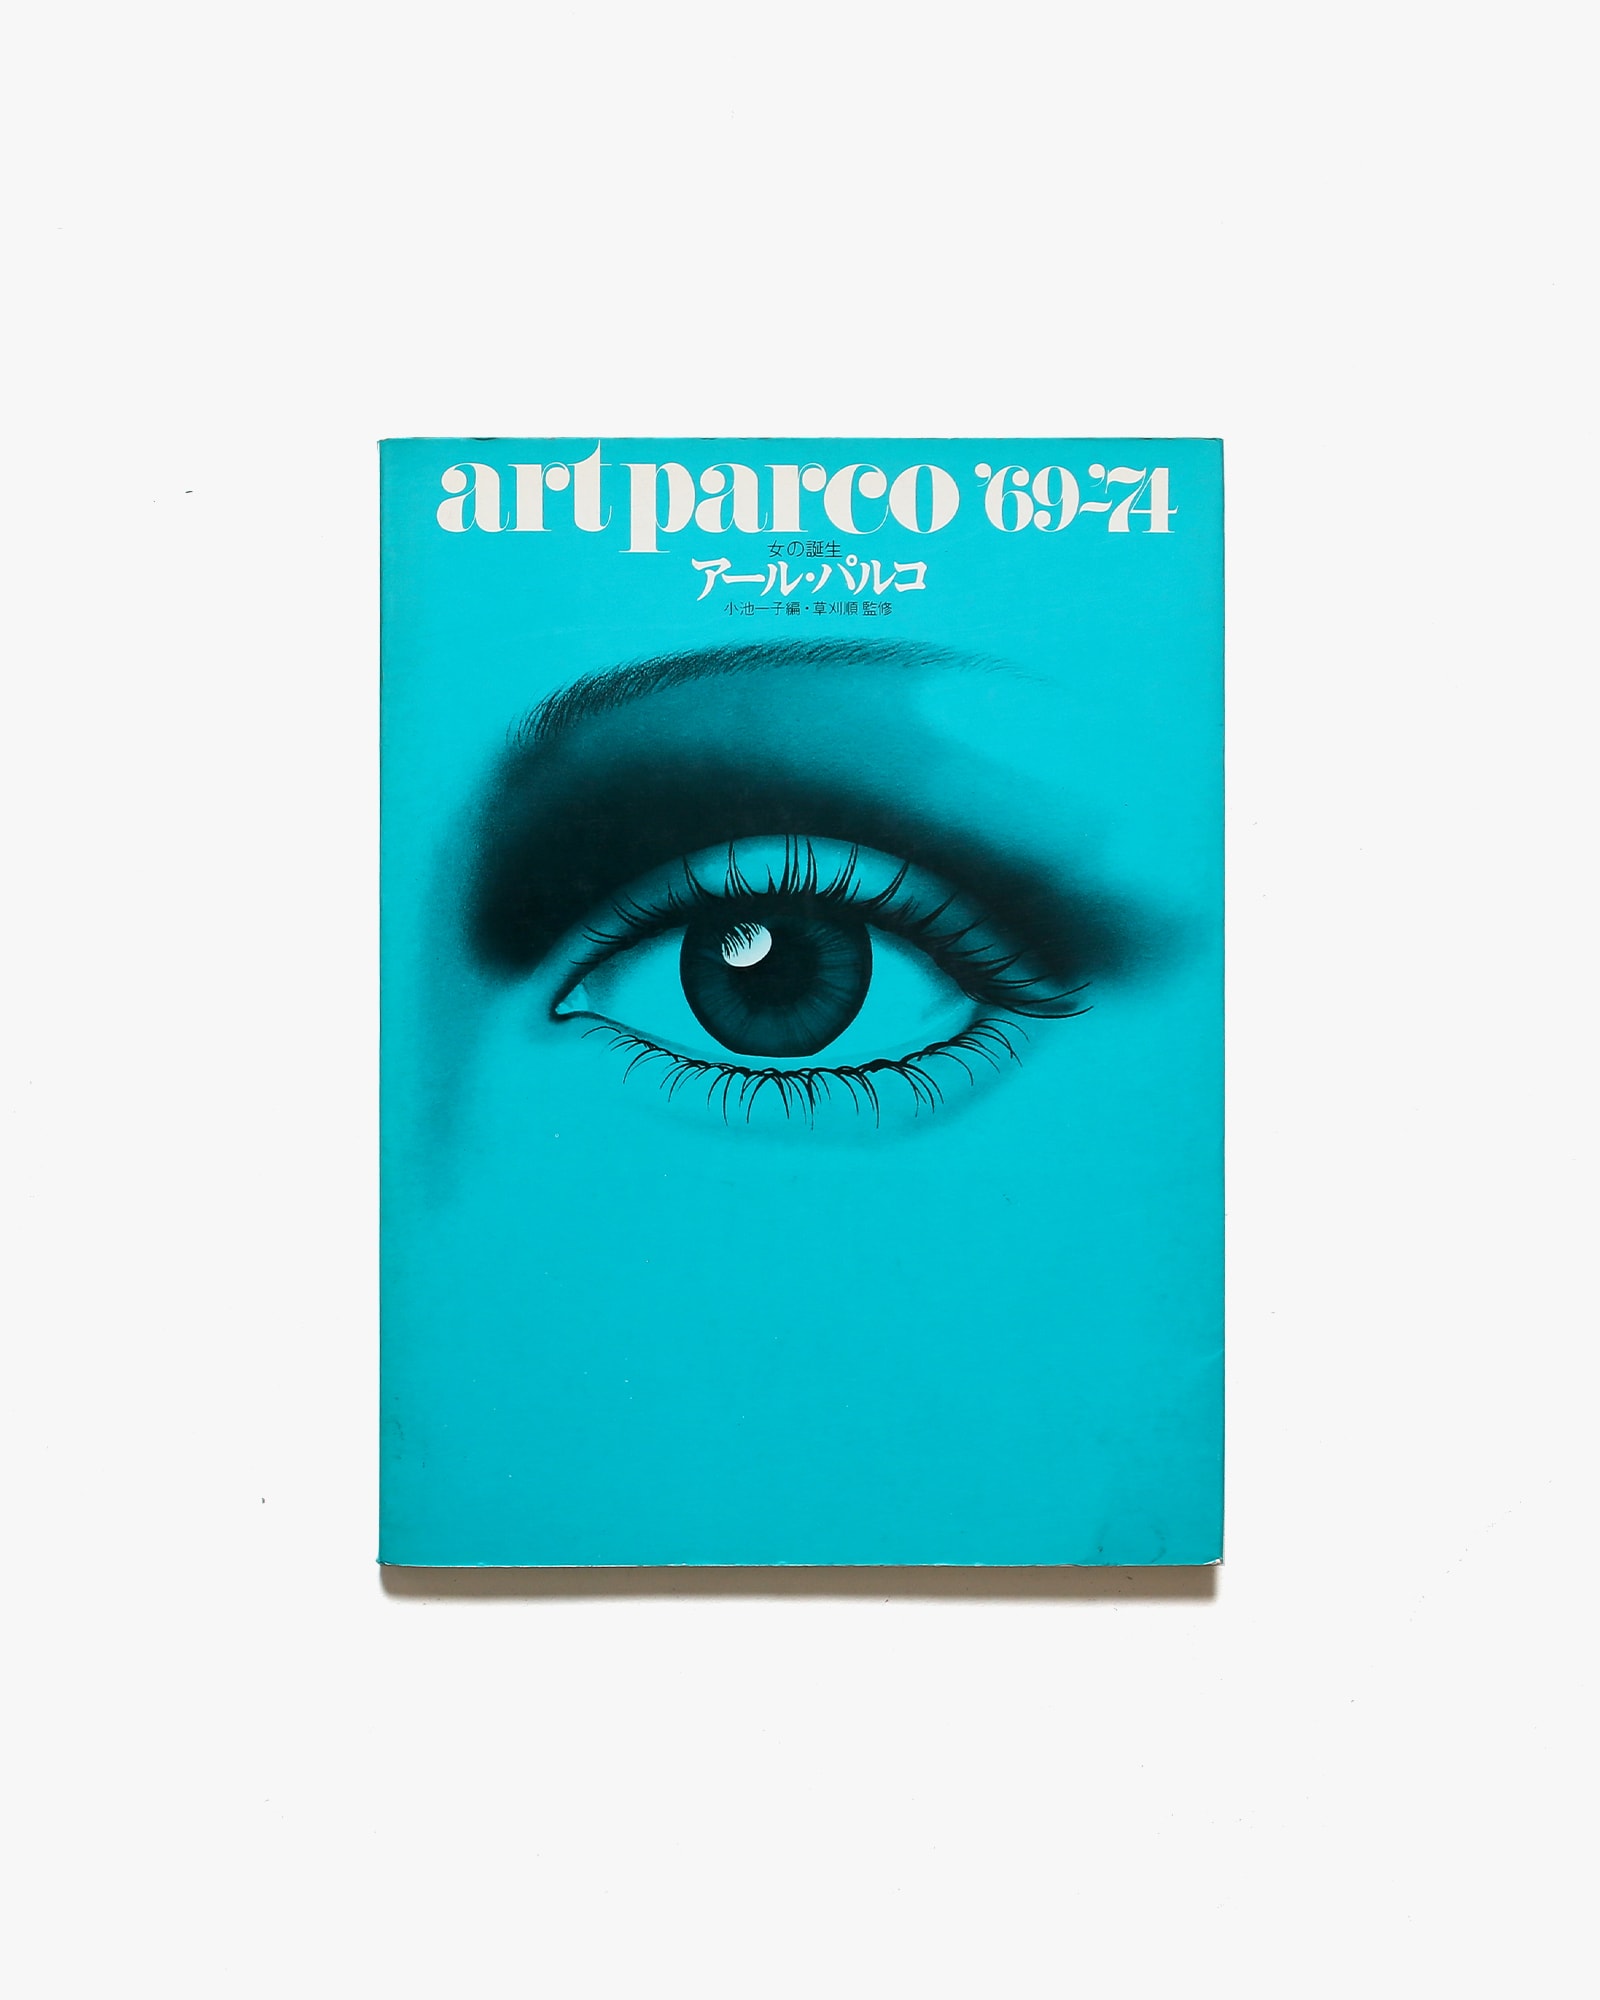 【定番品質保証】【希少】アール・パルコ 女の誕生 PARCO 69-74 アート・デザイン・音楽